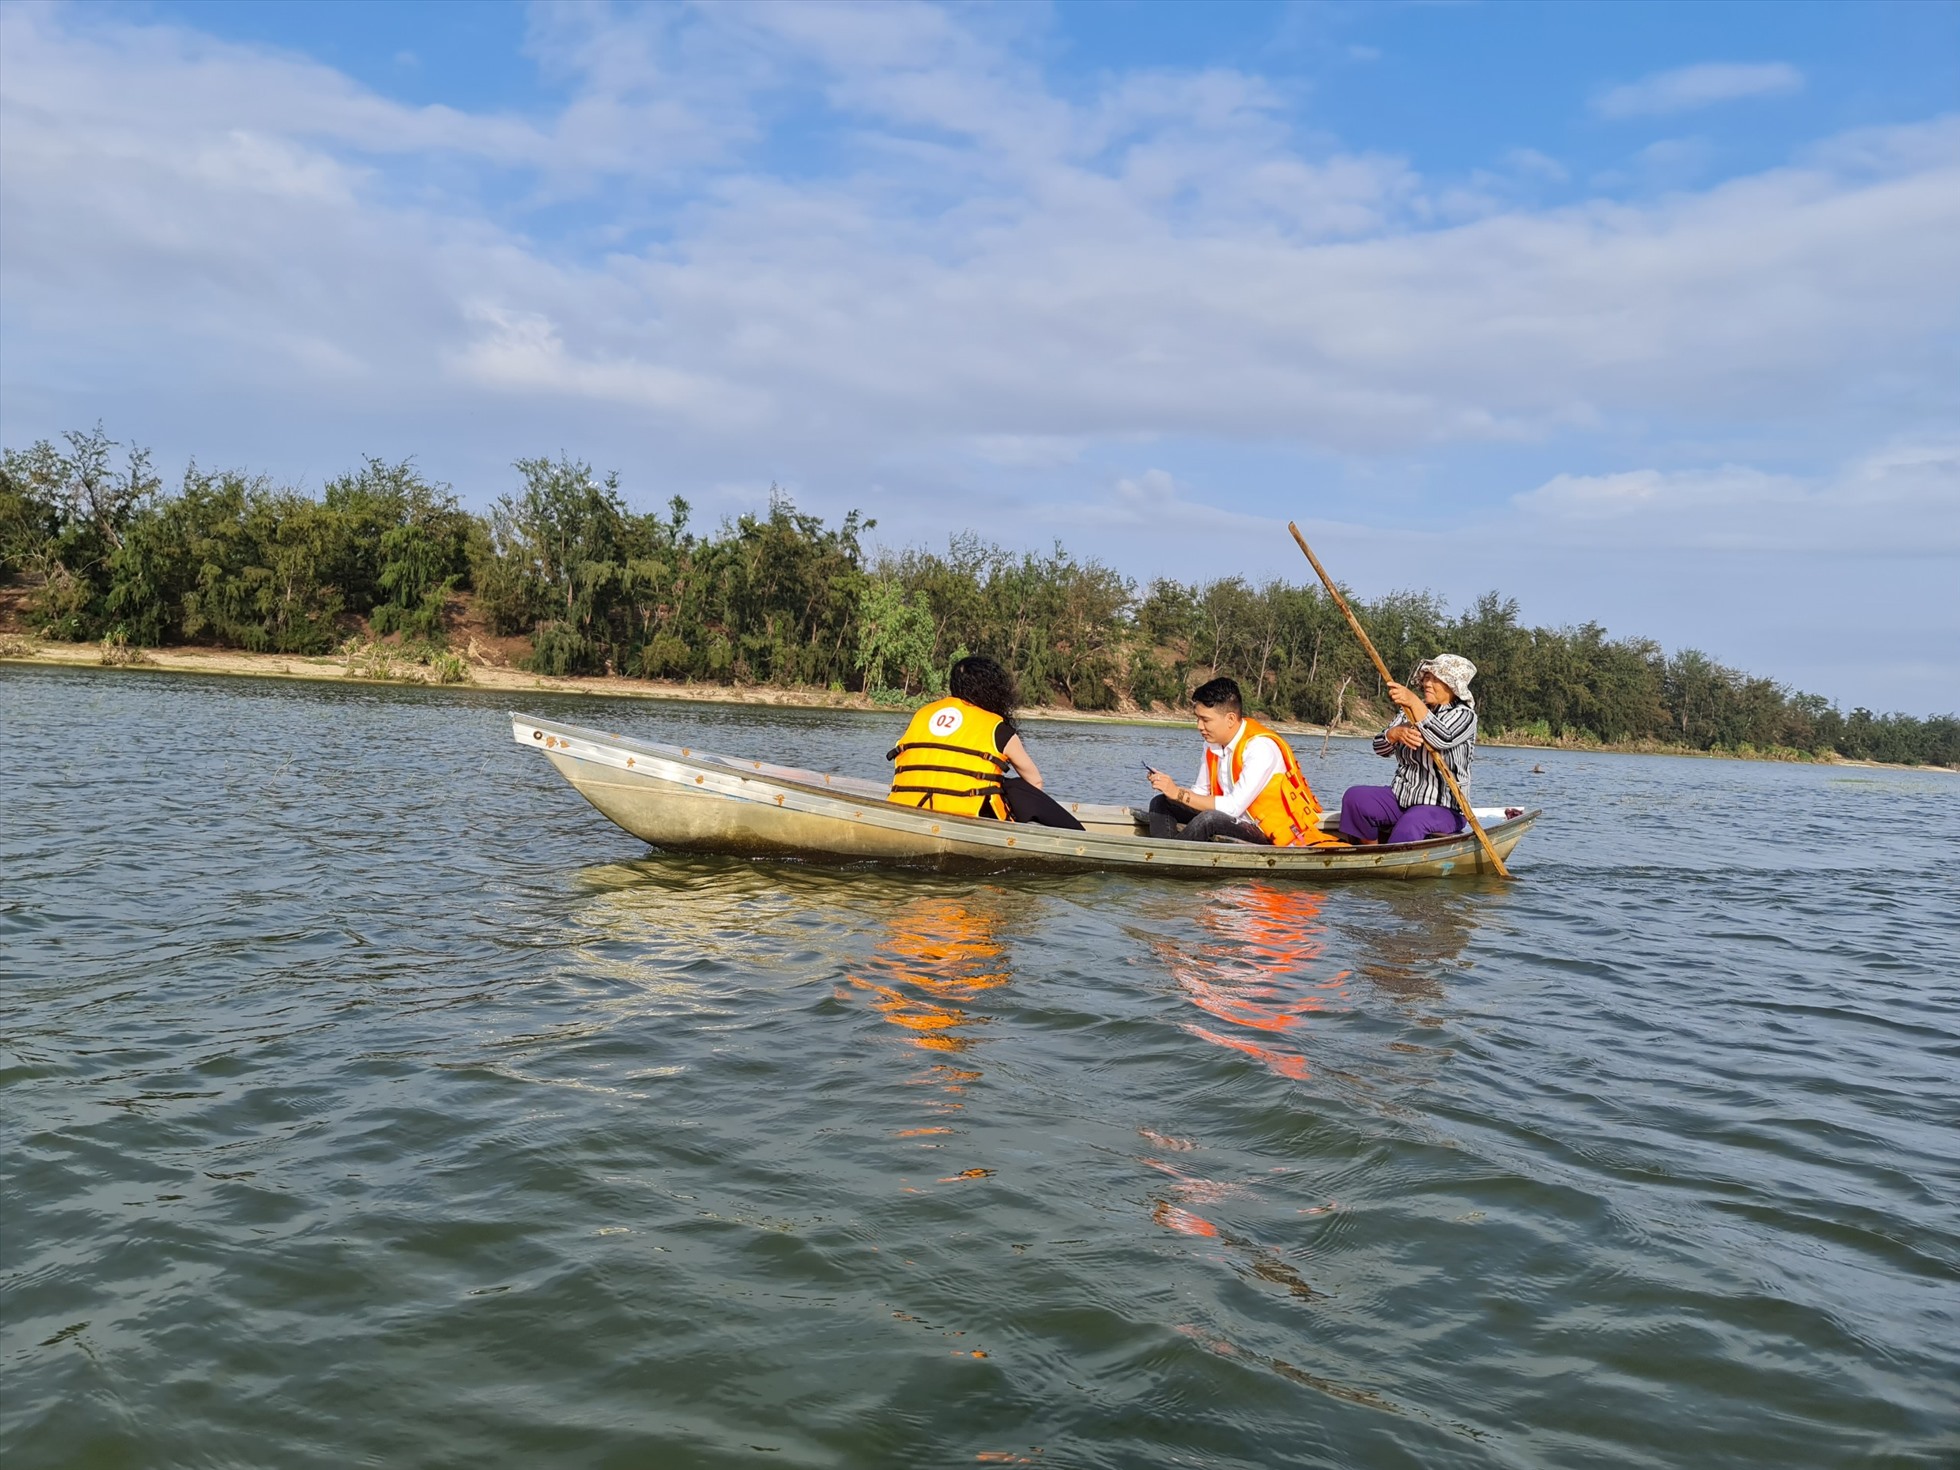 Đầm có diện tích mặt nước 347 ha, là một trong những điều kiện môi sinh quan trọng hình thành Văn hóa Sa Huỳnh.